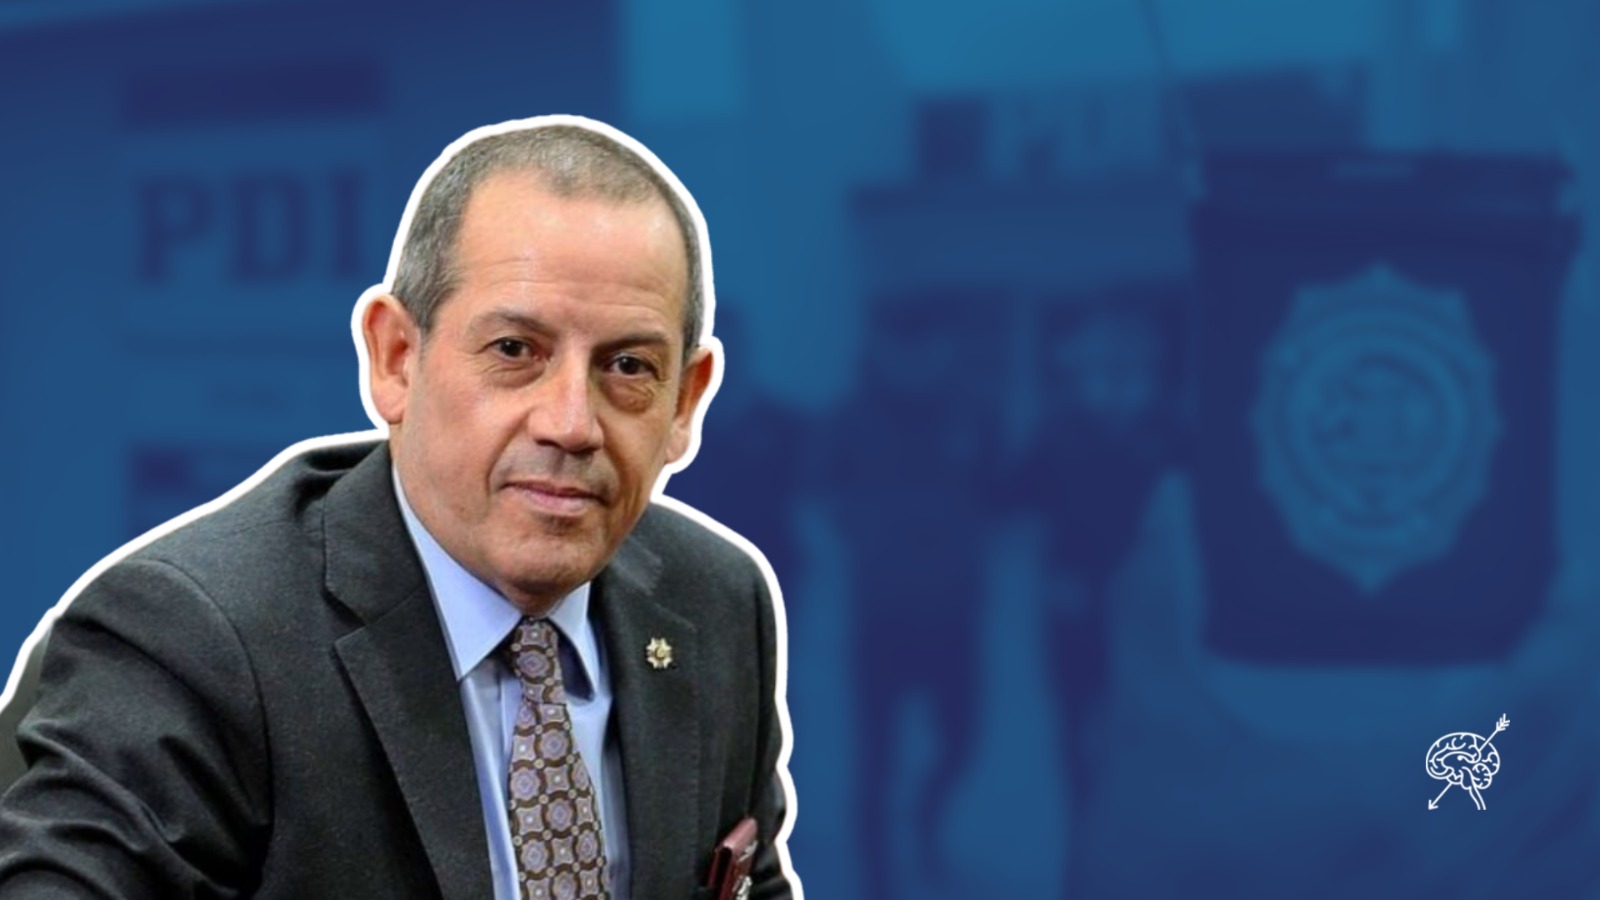 Vehículo fiscal, acoso laboral y obstrucción: El historial de denuncias en contra de Sergio Muñoz al interior de la PDI